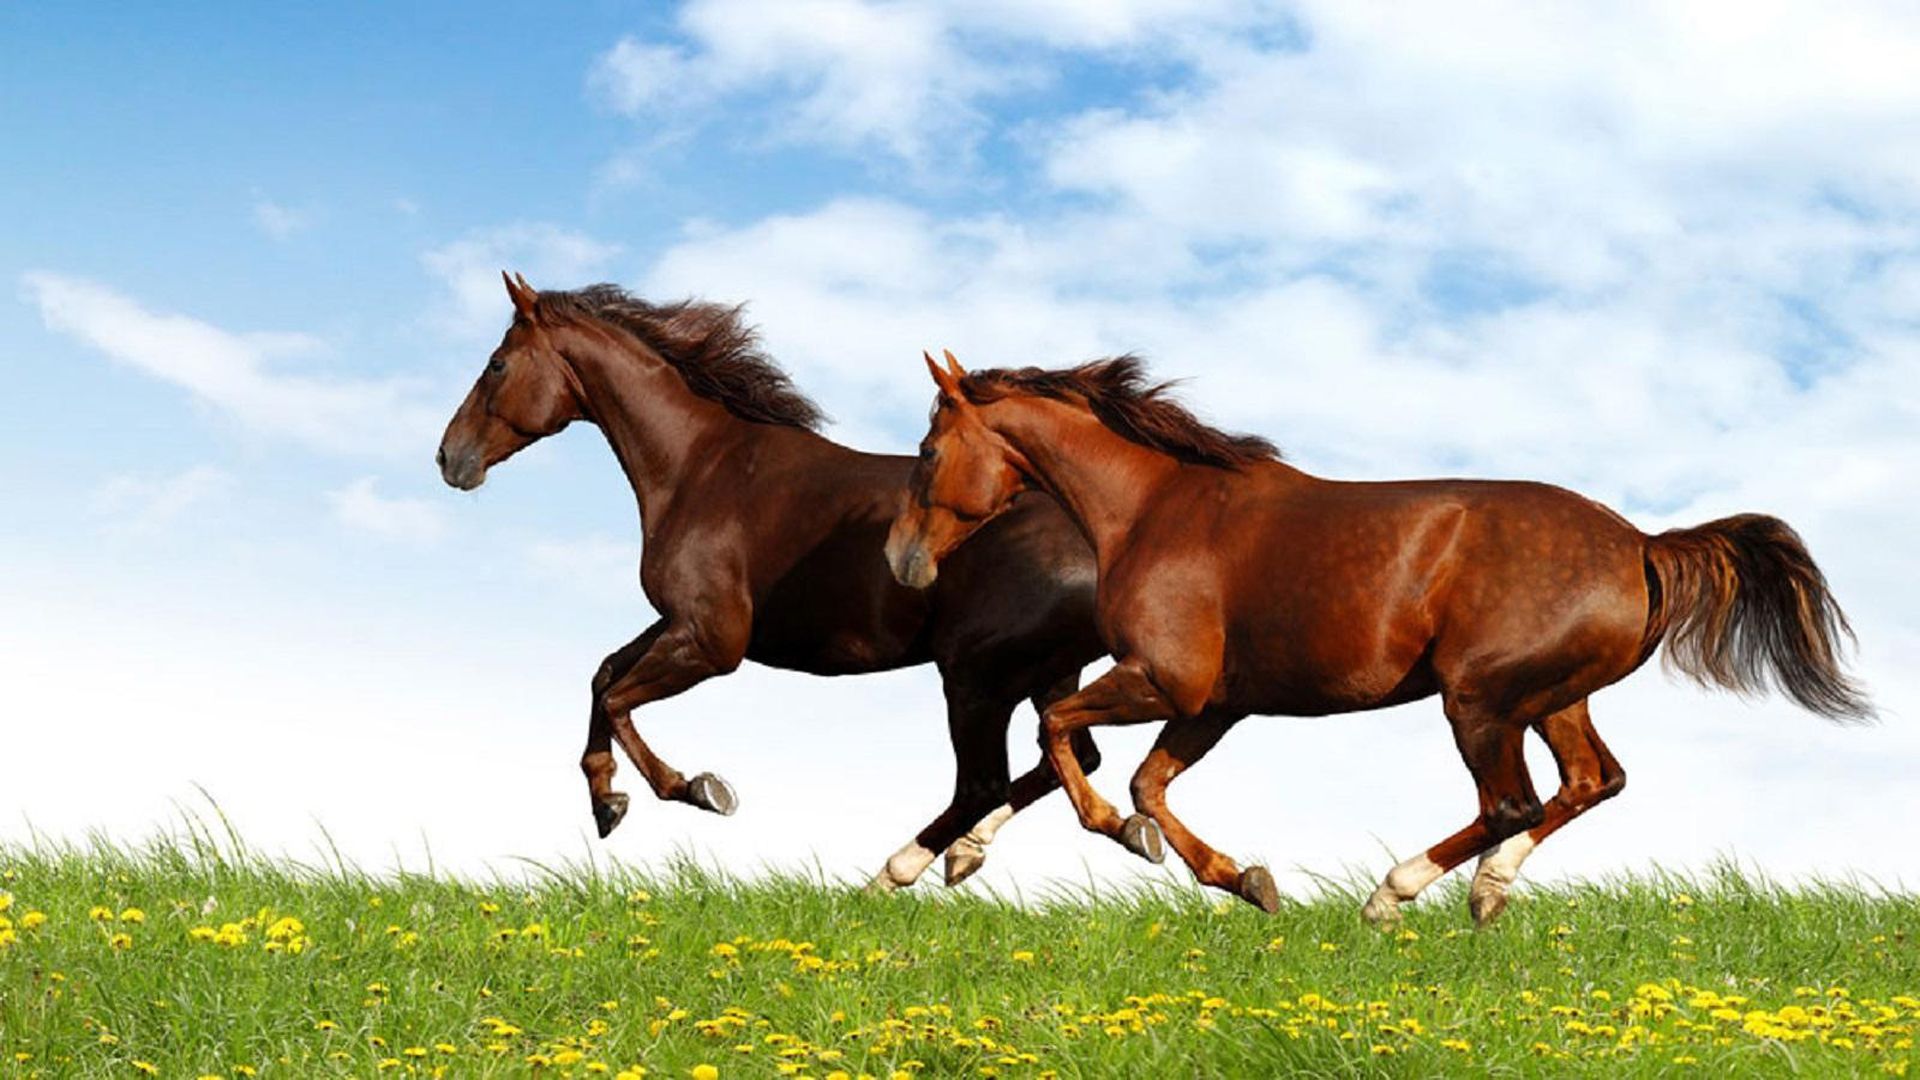 Brown And Red Horse Running In A Field Of Green Grass Desktop Wallpaper HD, Wallpaper13.com